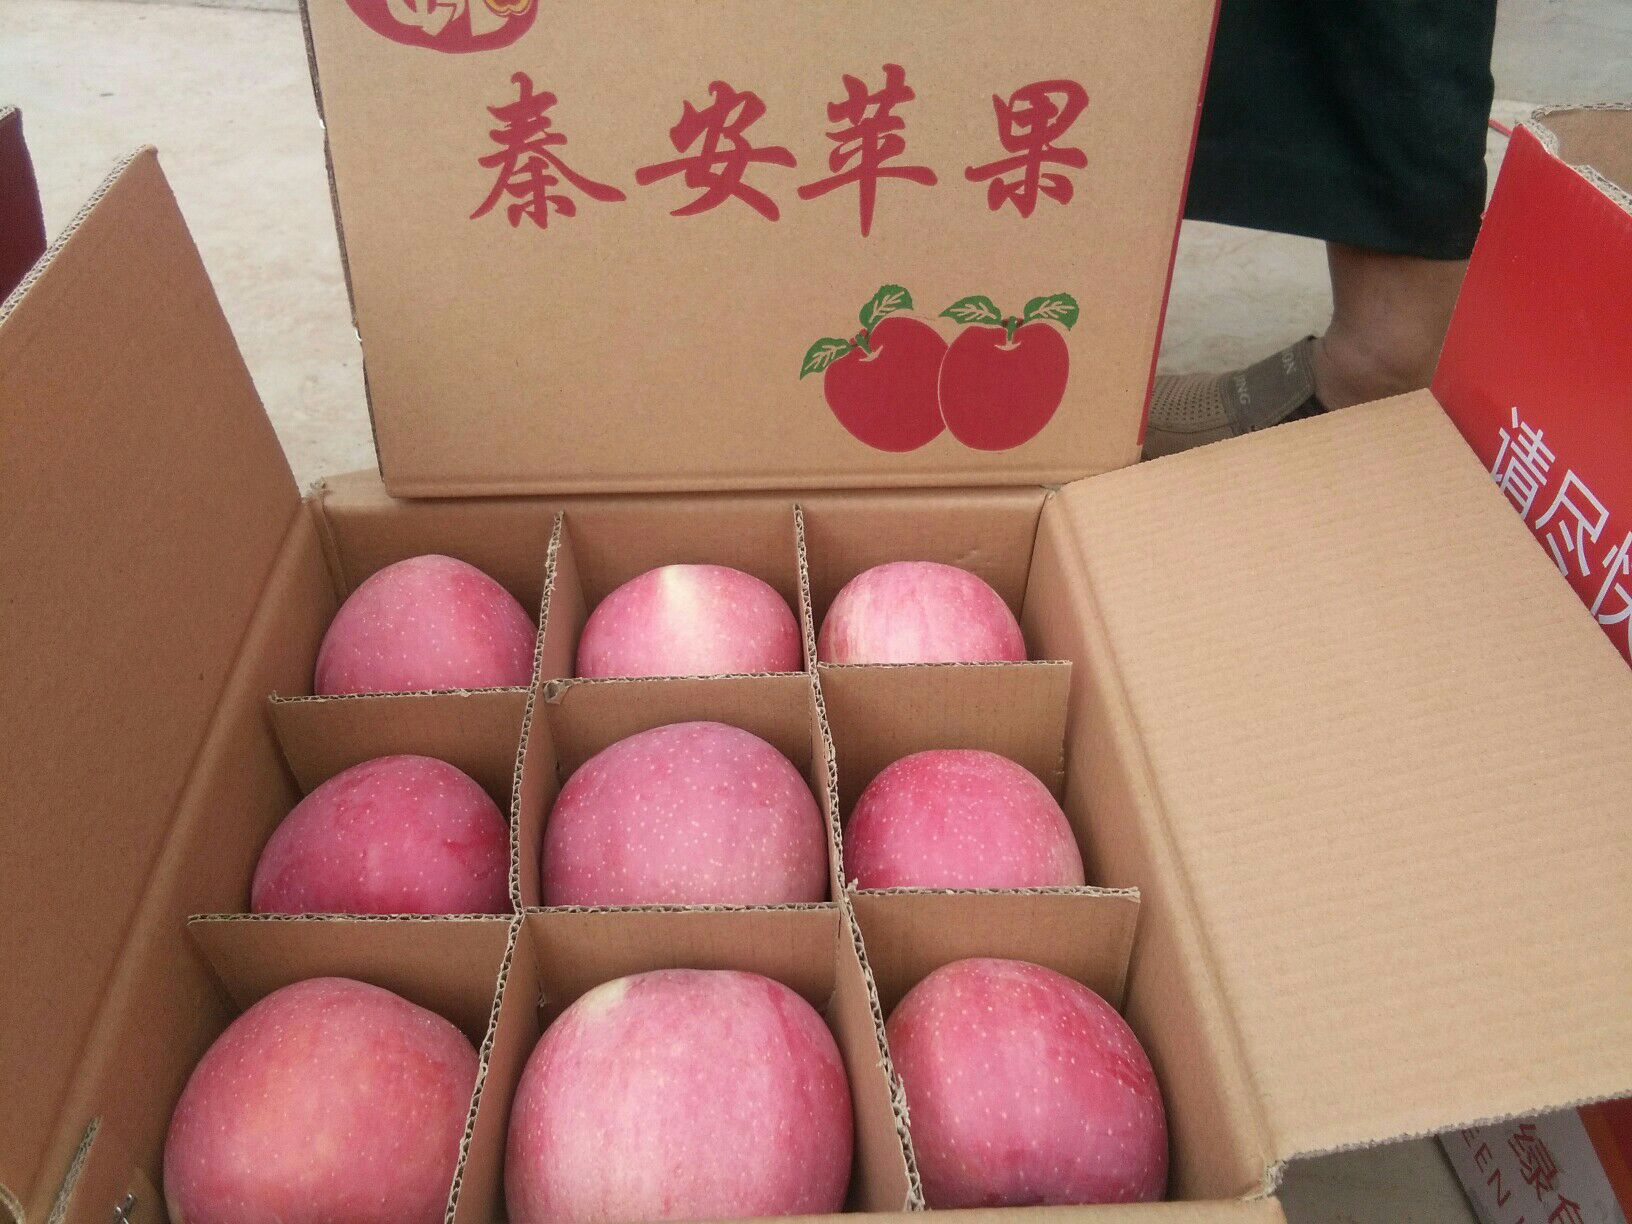 品种名:红富士苹果 果径:85mm以上 颜色:片红 是否套袋:纸袋 货品包装